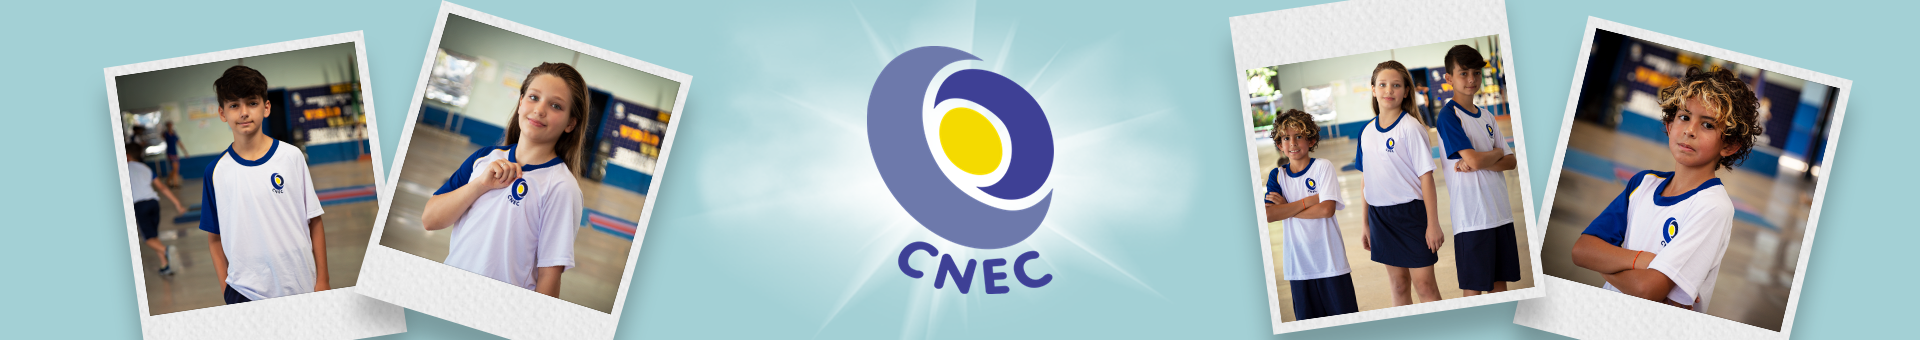 Colégio CNEC